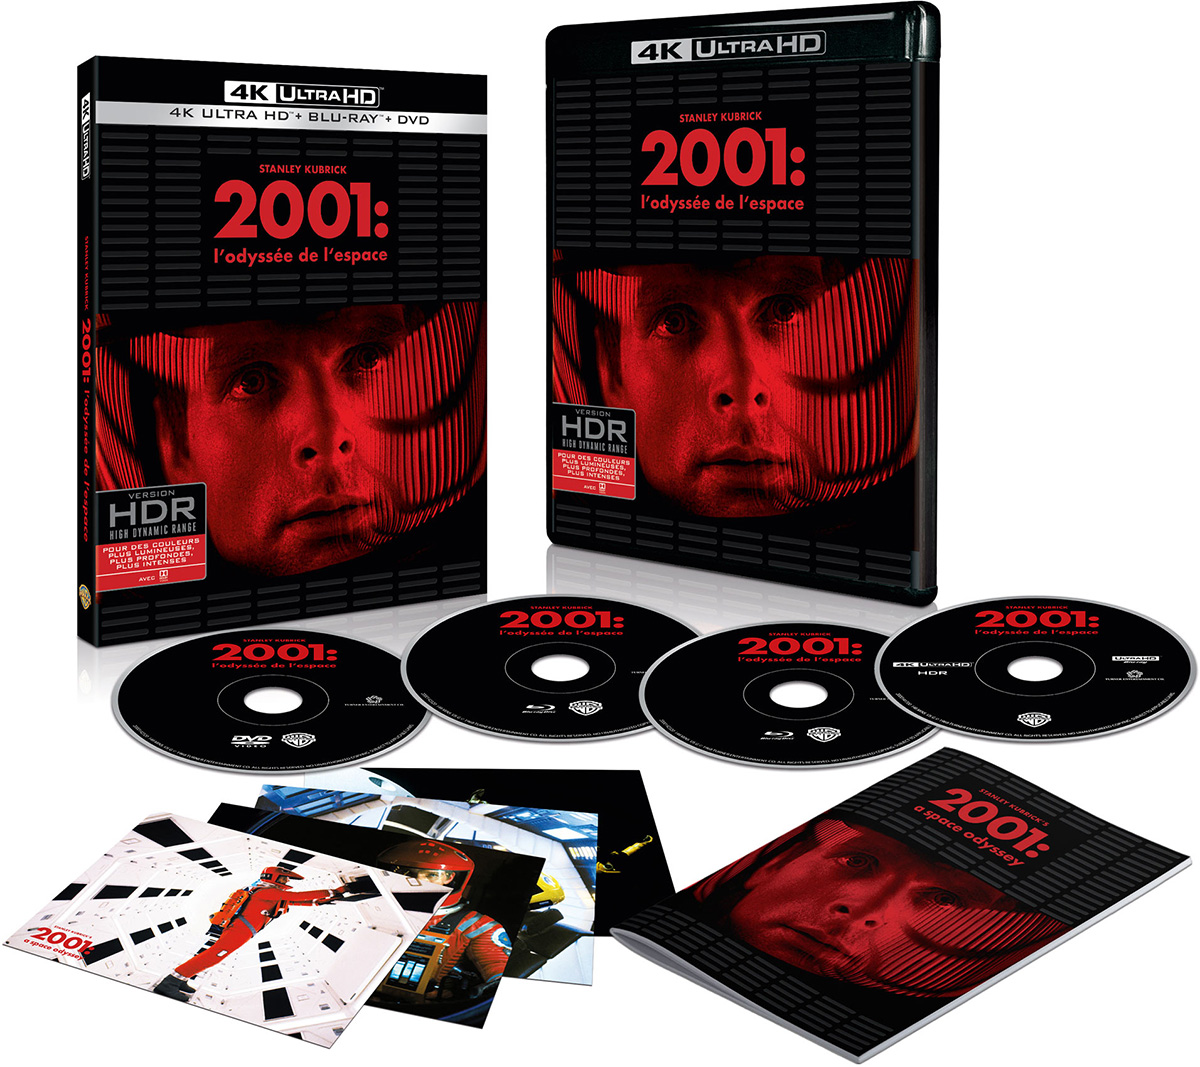 2001, l'odyssée de l'espace - 4K Ultra HD + Blu-ray + DVD